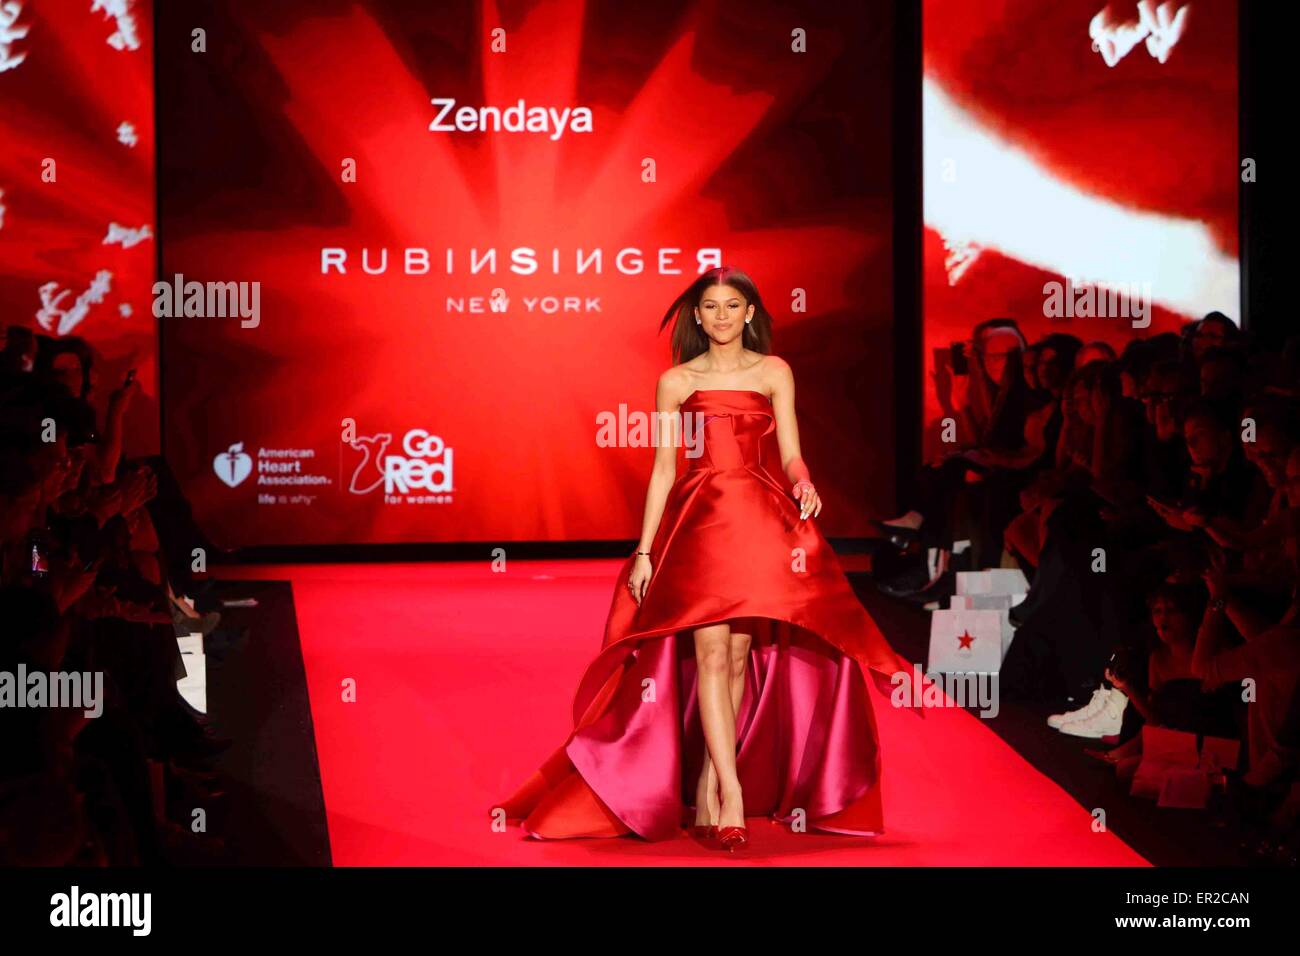 Zendaya indossa Rubinsinger ad andare in rosso per Women-The cuore verità abito rosso a raccolta Mercedes-Benz della settimana della moda. Foto Stock